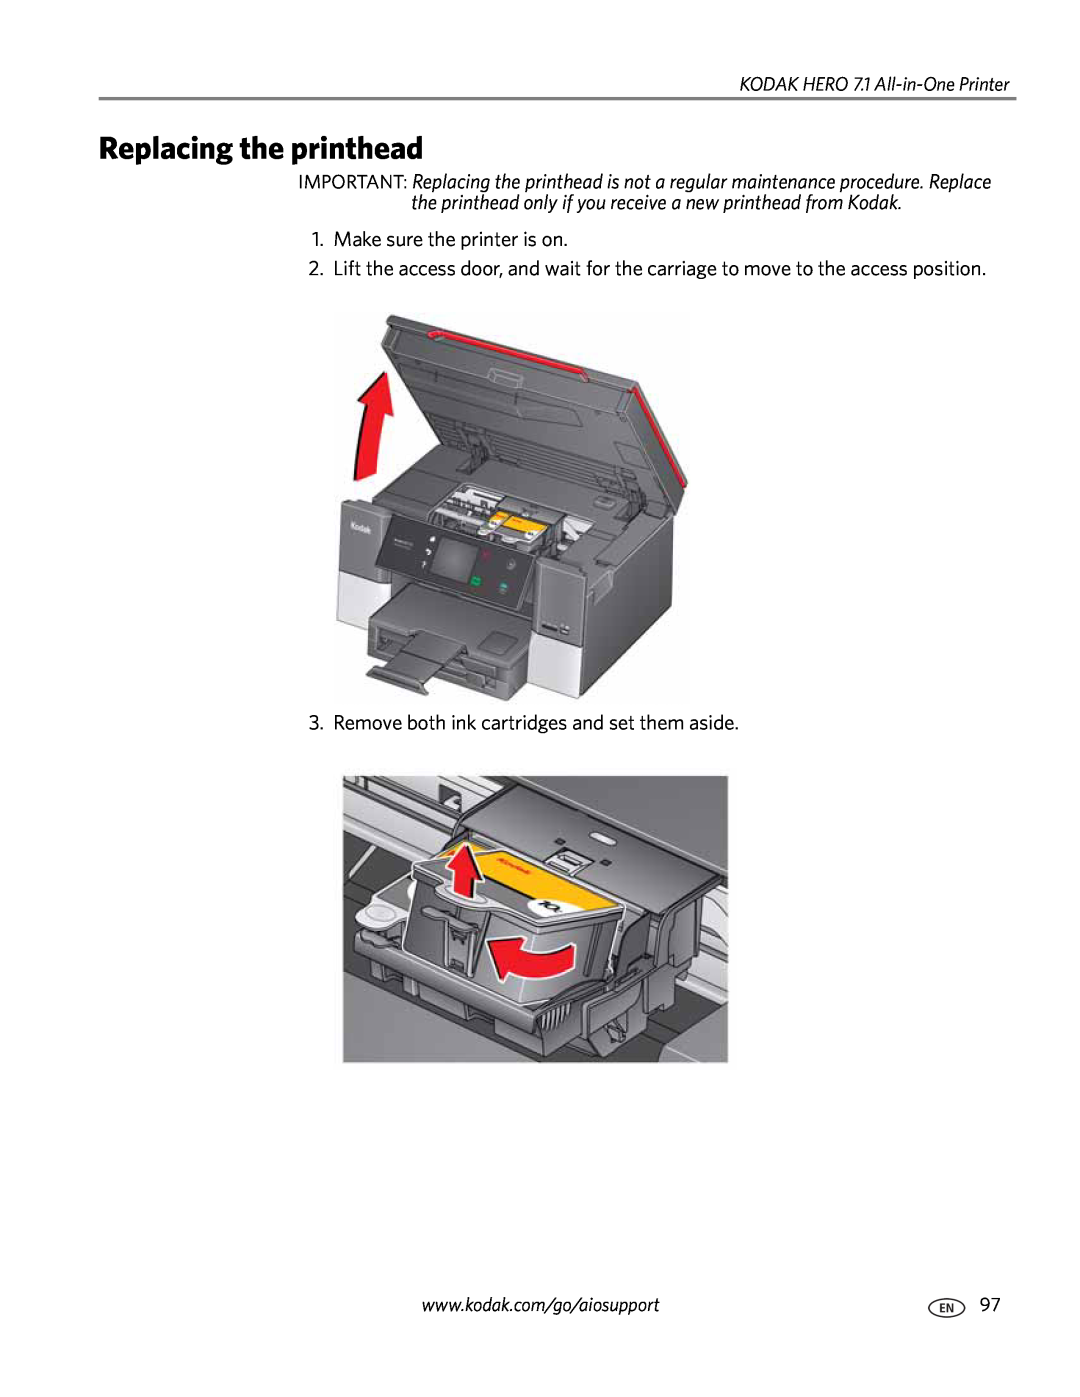 Kodak manual Replacing the printhead, KODAK HERO 7.1 All-in-One Printer 